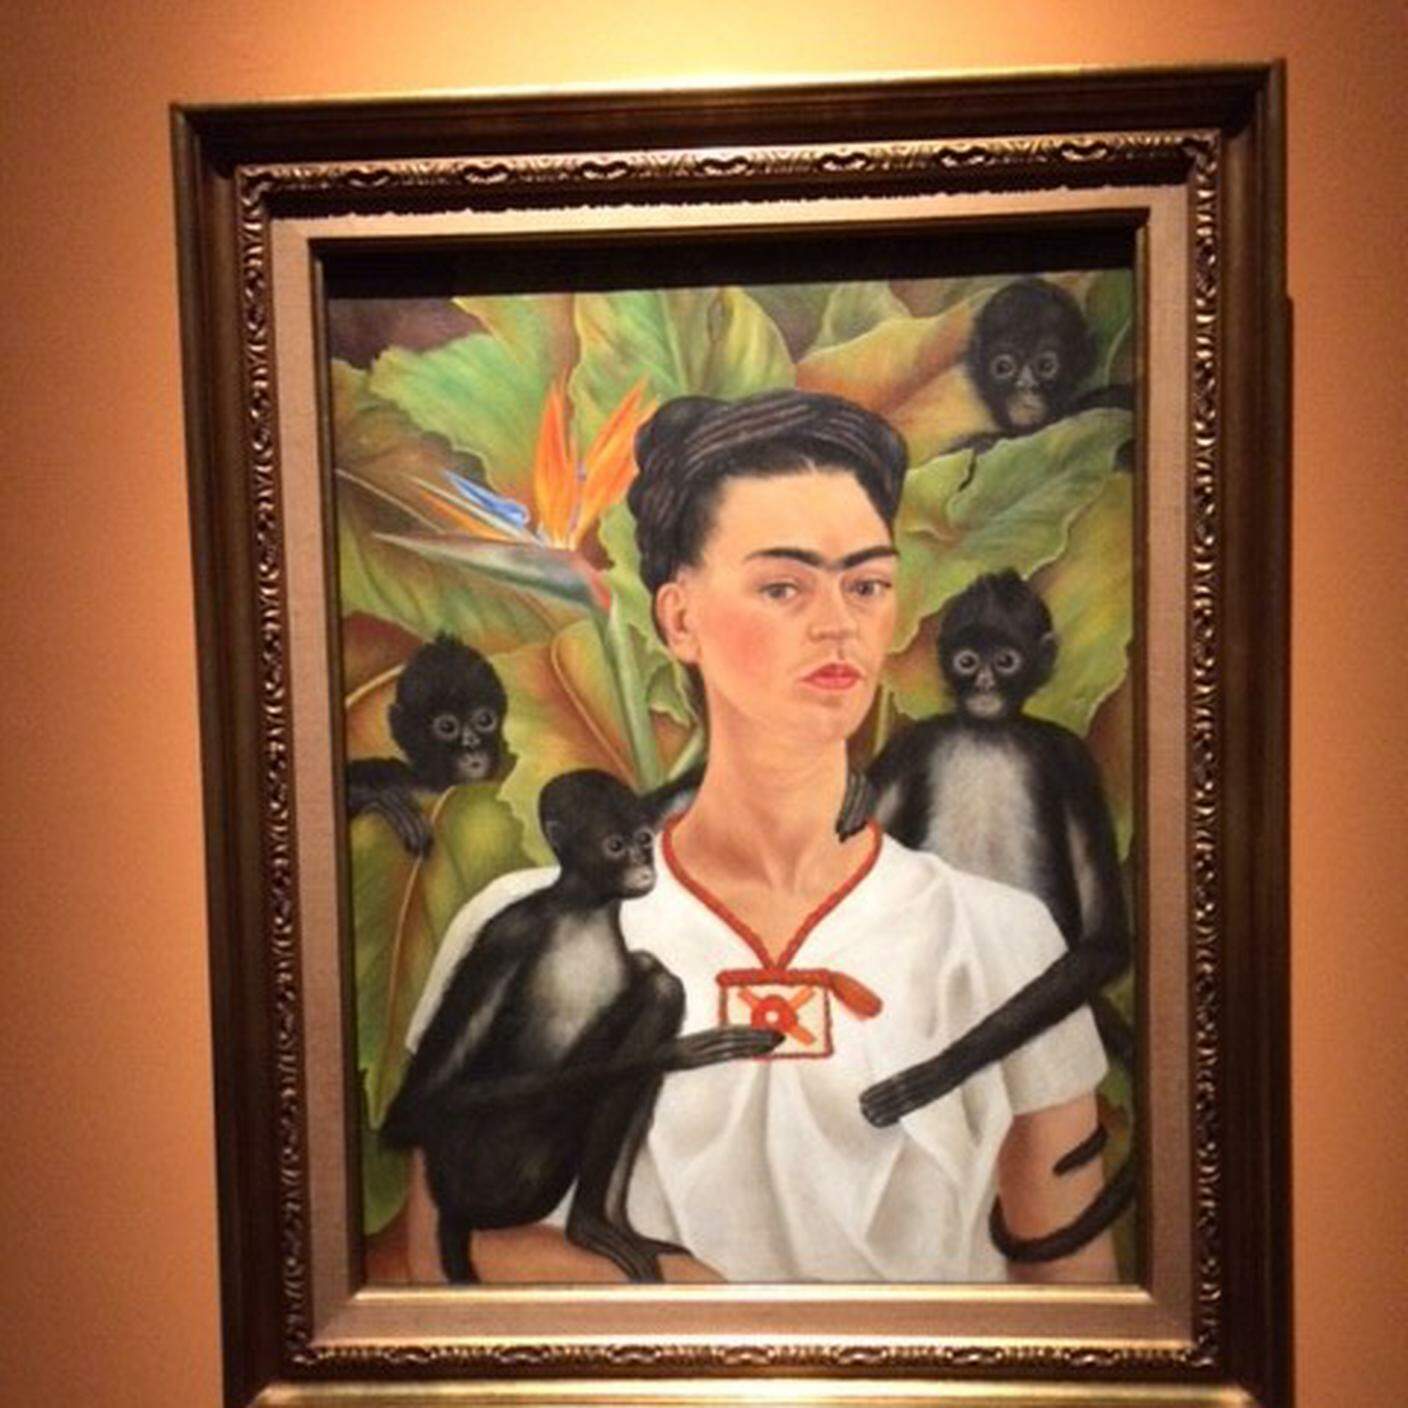 Emanuela Burgazzoli Frida Kahlo